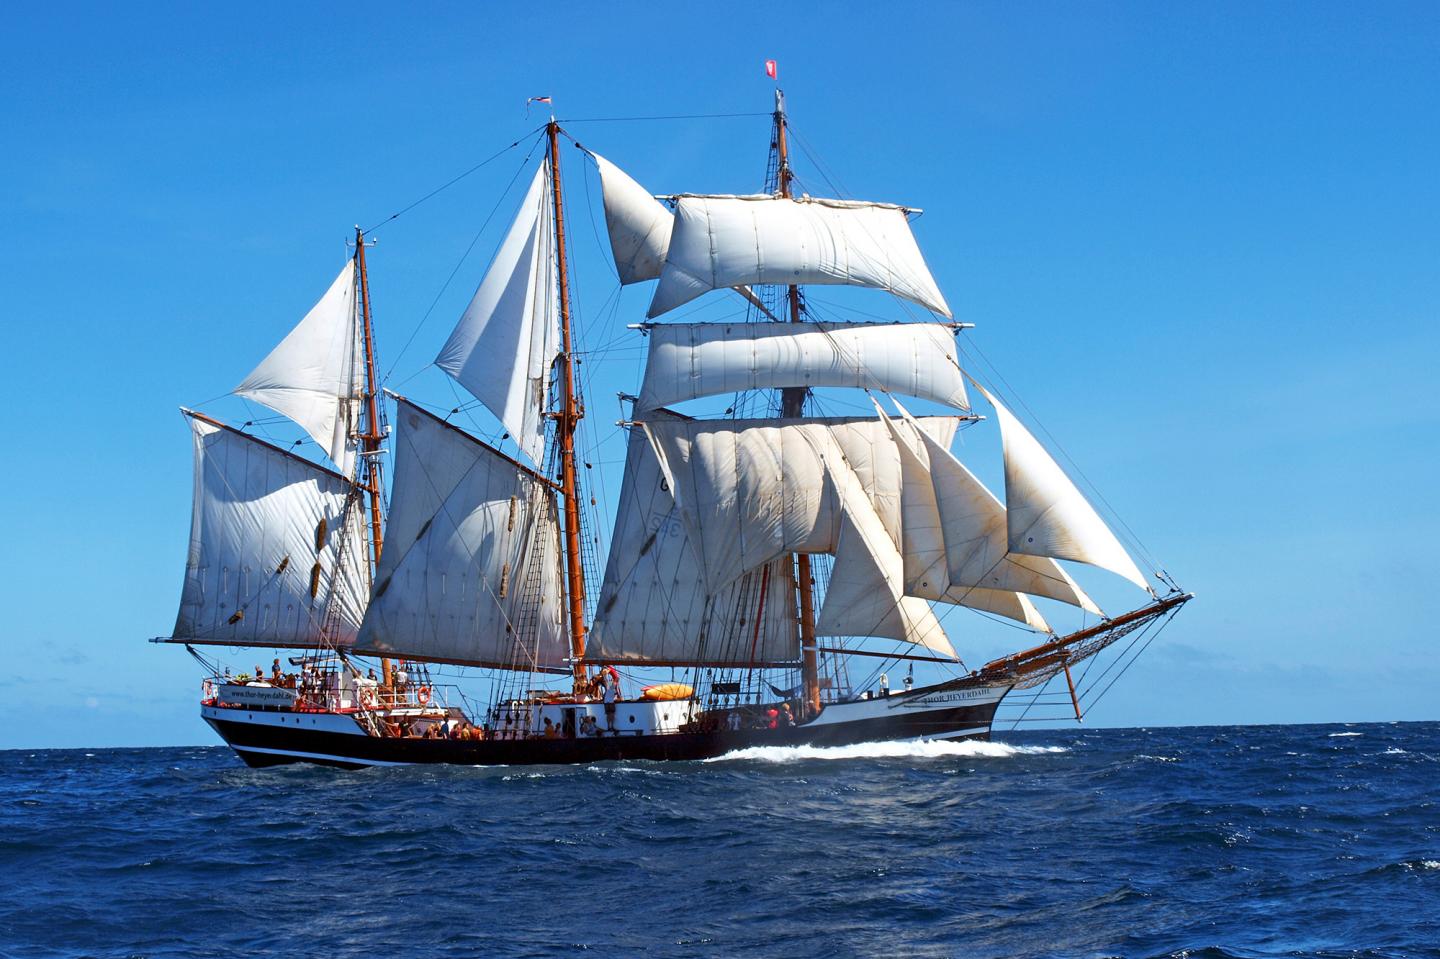 The Sailing Ship Thor Heyerdahl